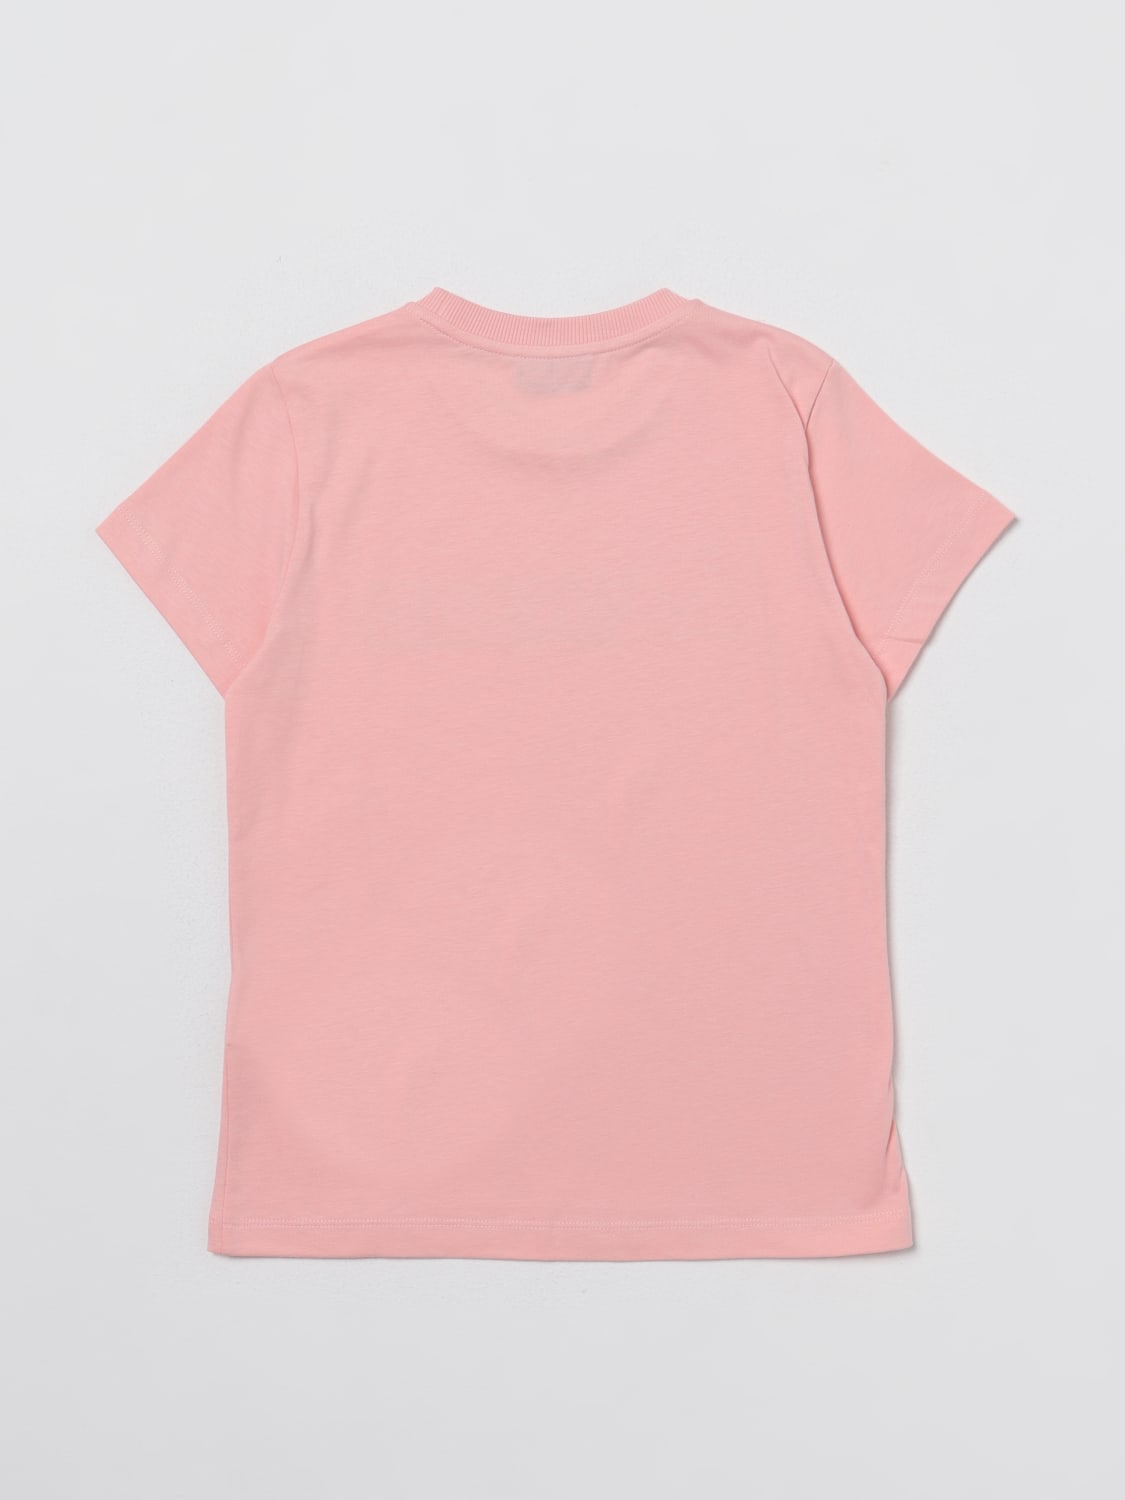 MOSCHINO KID: t-shirt in cotton - Pink | Moschino Kid t-shirt ...